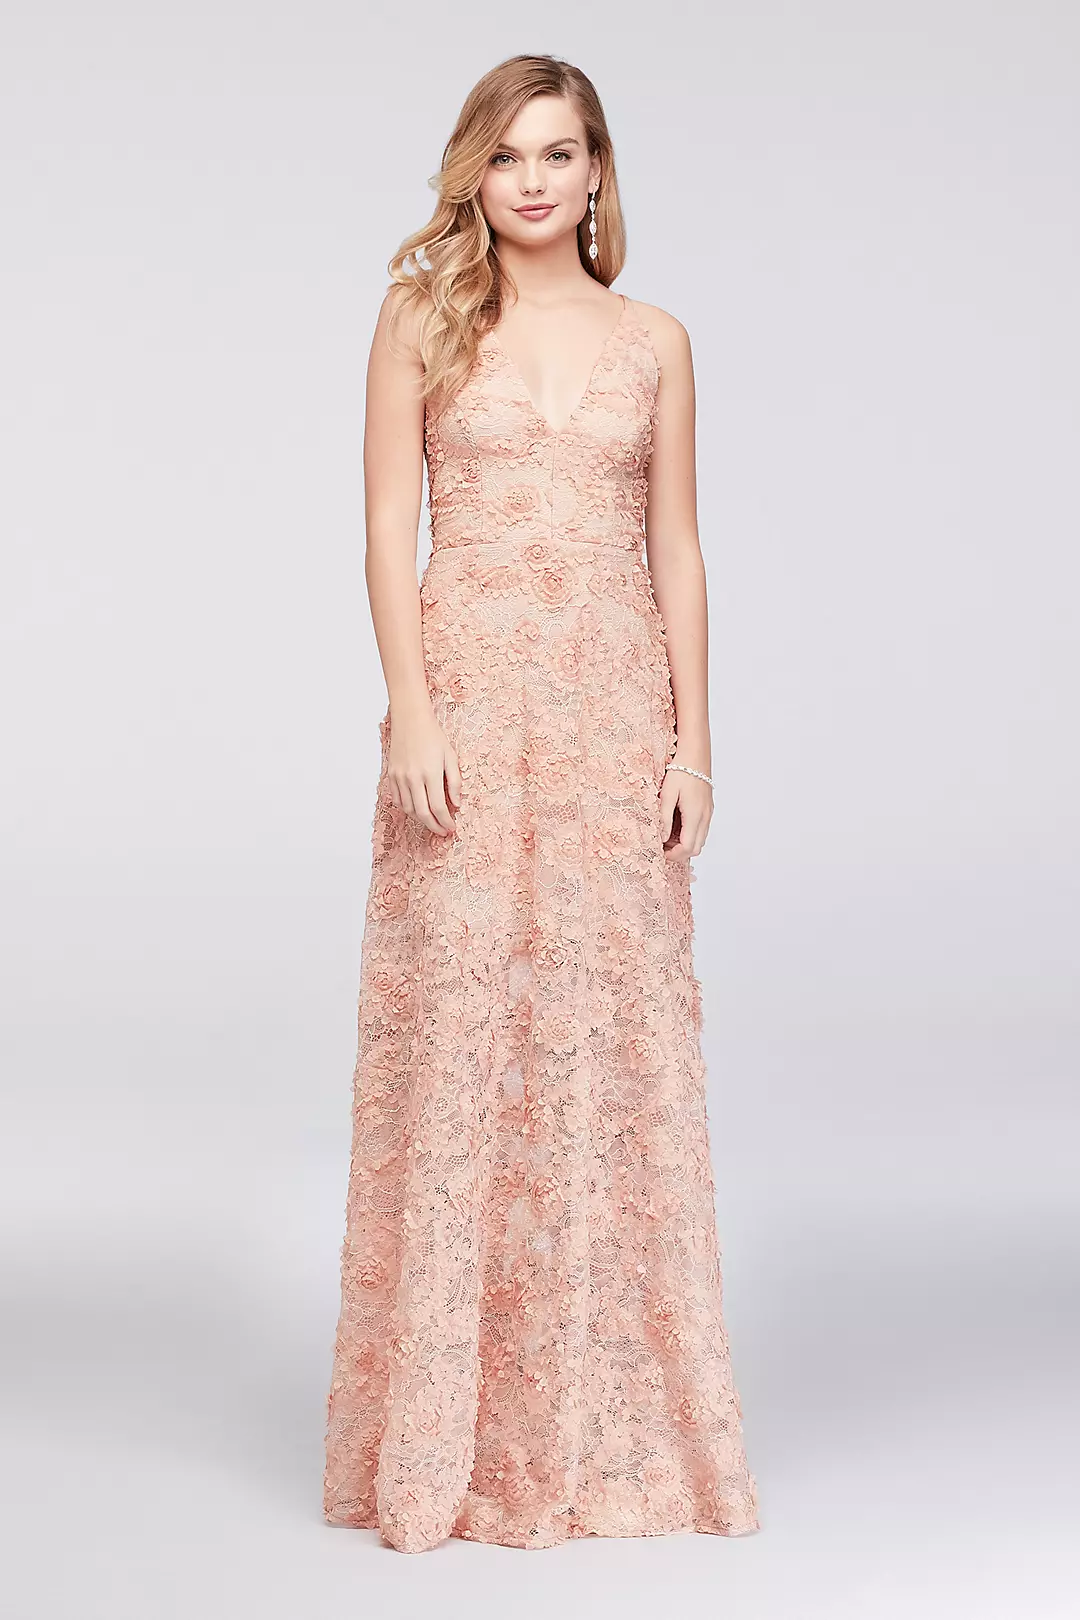 3D Floral Applique Lace A-Line Gown Image